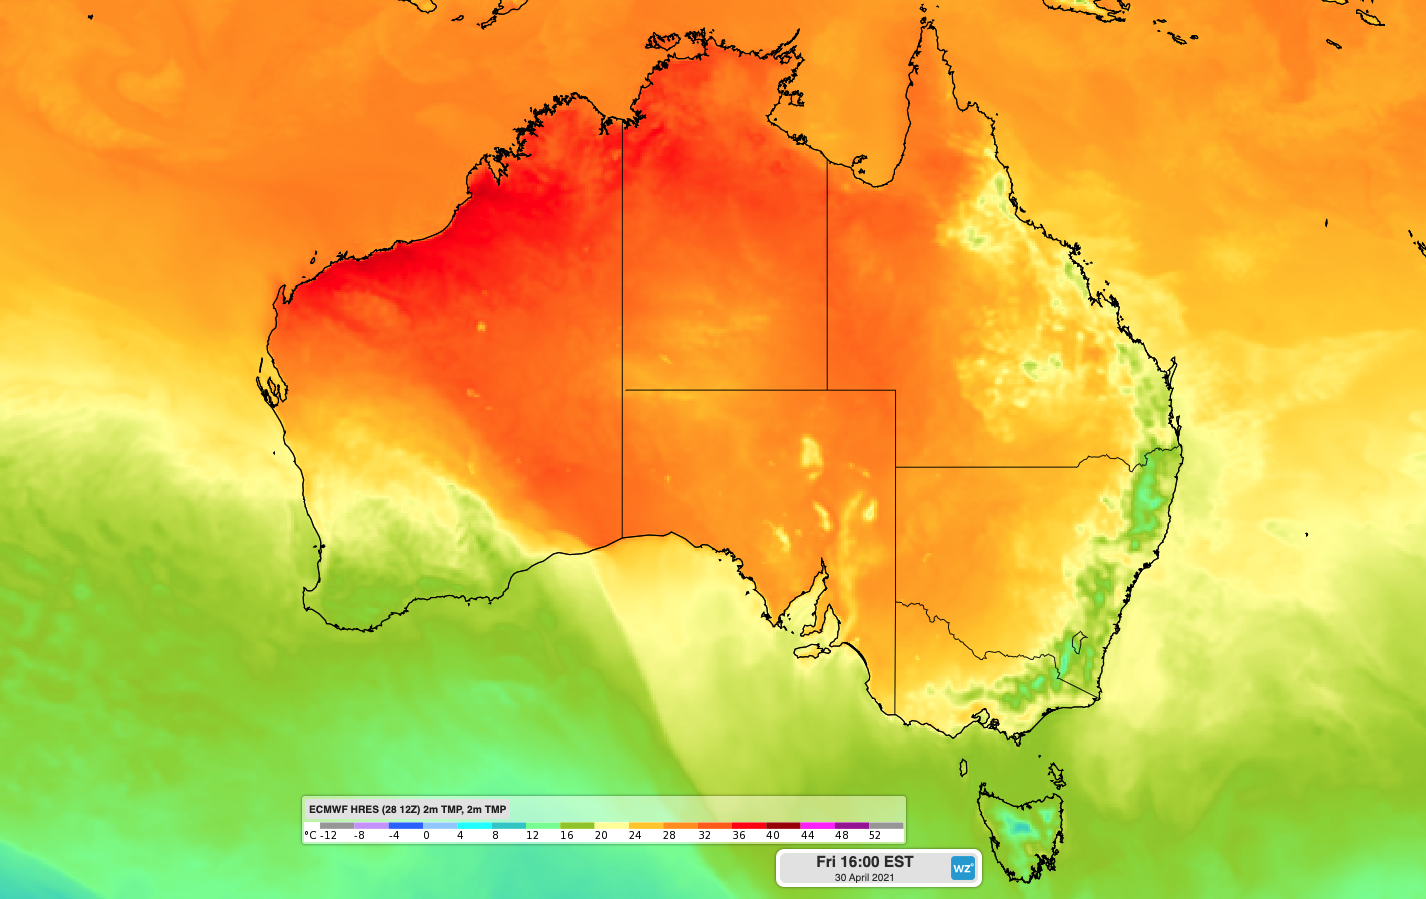 Unseasonably warm weekend ahead for southern Australia 